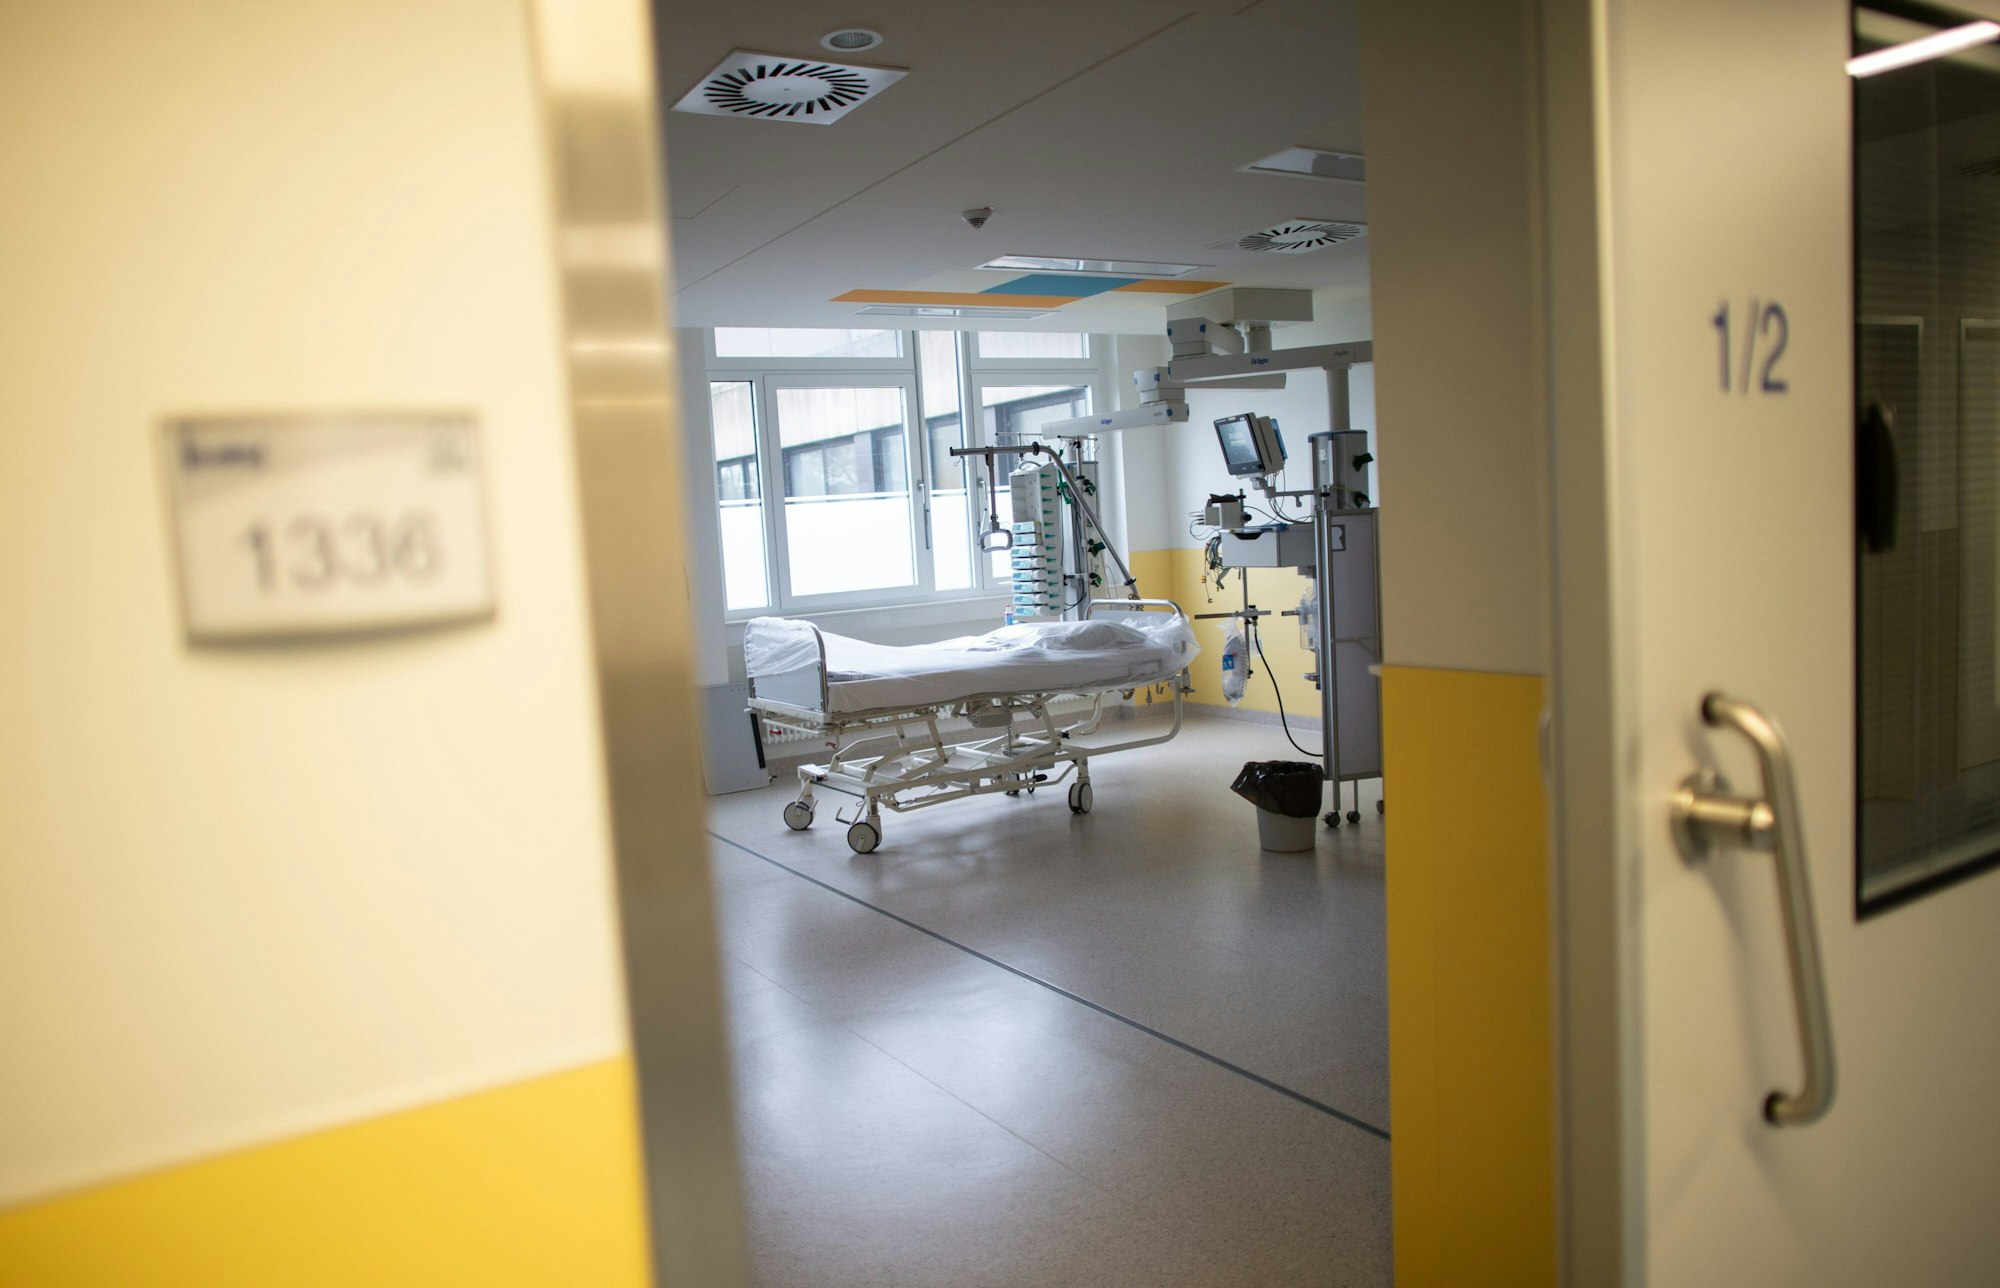 Ein leeres Bett steht Ende März 2020 in der Intensivstation des Prosper Hospitals in Recklinghausen. Die Corona-Infektionen sind nach dem Ferienende in NRW steil nach oben gegangen. Erneut appellieren Mediziner in NRW, Impfangebote anzunehmen.